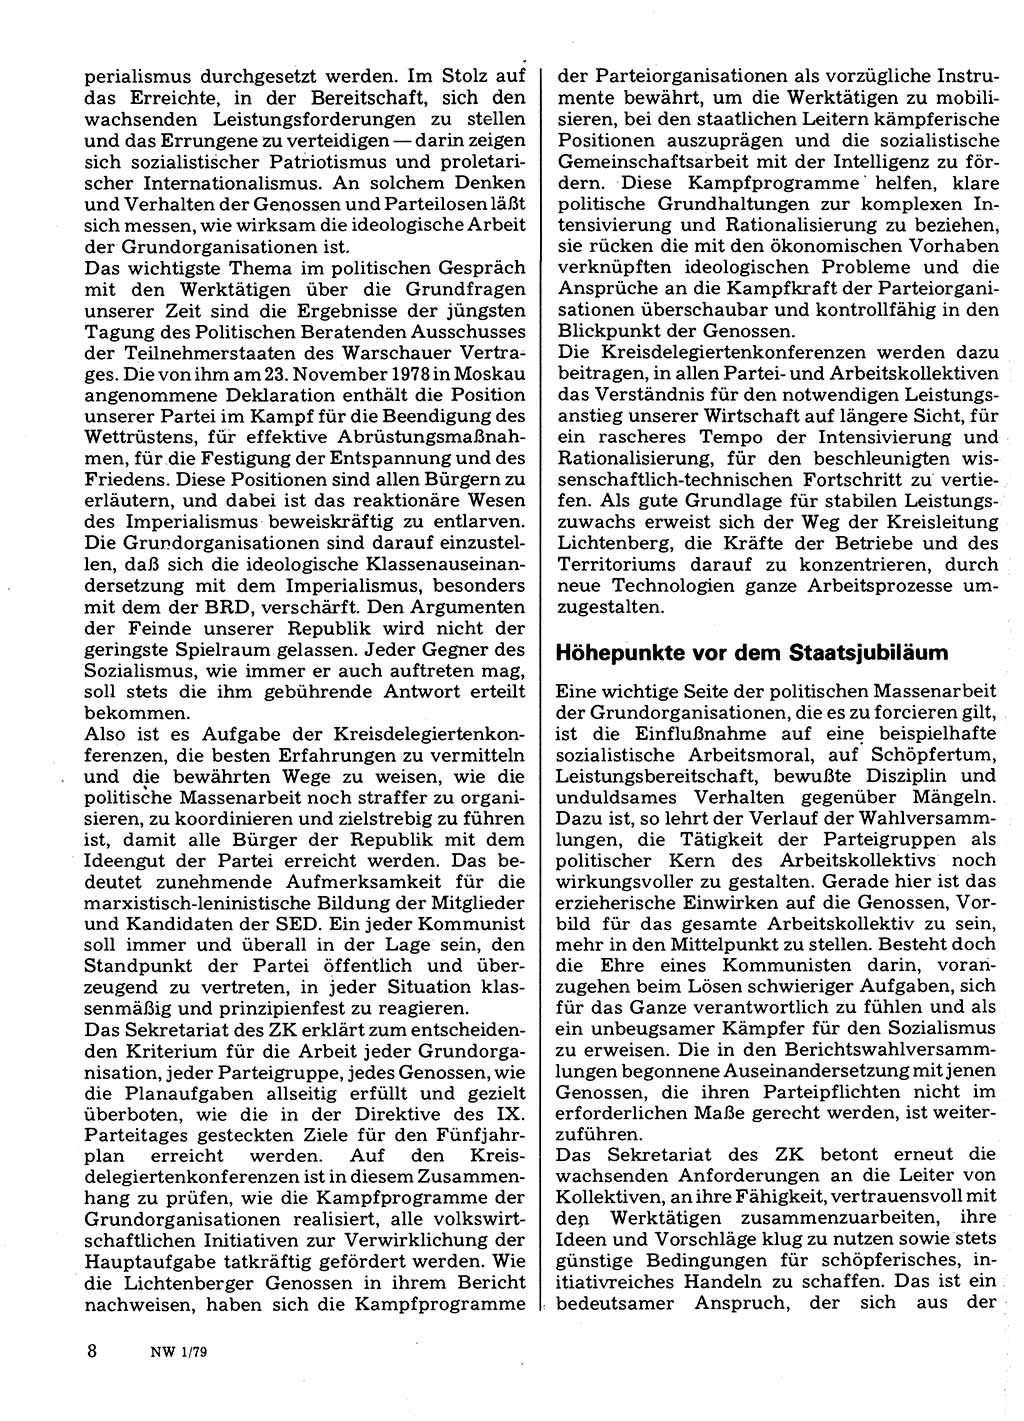 Neuer Weg (NW), Organ des Zentralkomitees (ZK) der SED (Sozialistische Einheitspartei Deutschlands) für Fragen des Parteilebens, 34. Jahrgang [Deutsche Demokratische Republik (DDR)] 1979, Seite 8 (NW ZK SED DDR 1979, S. 8)